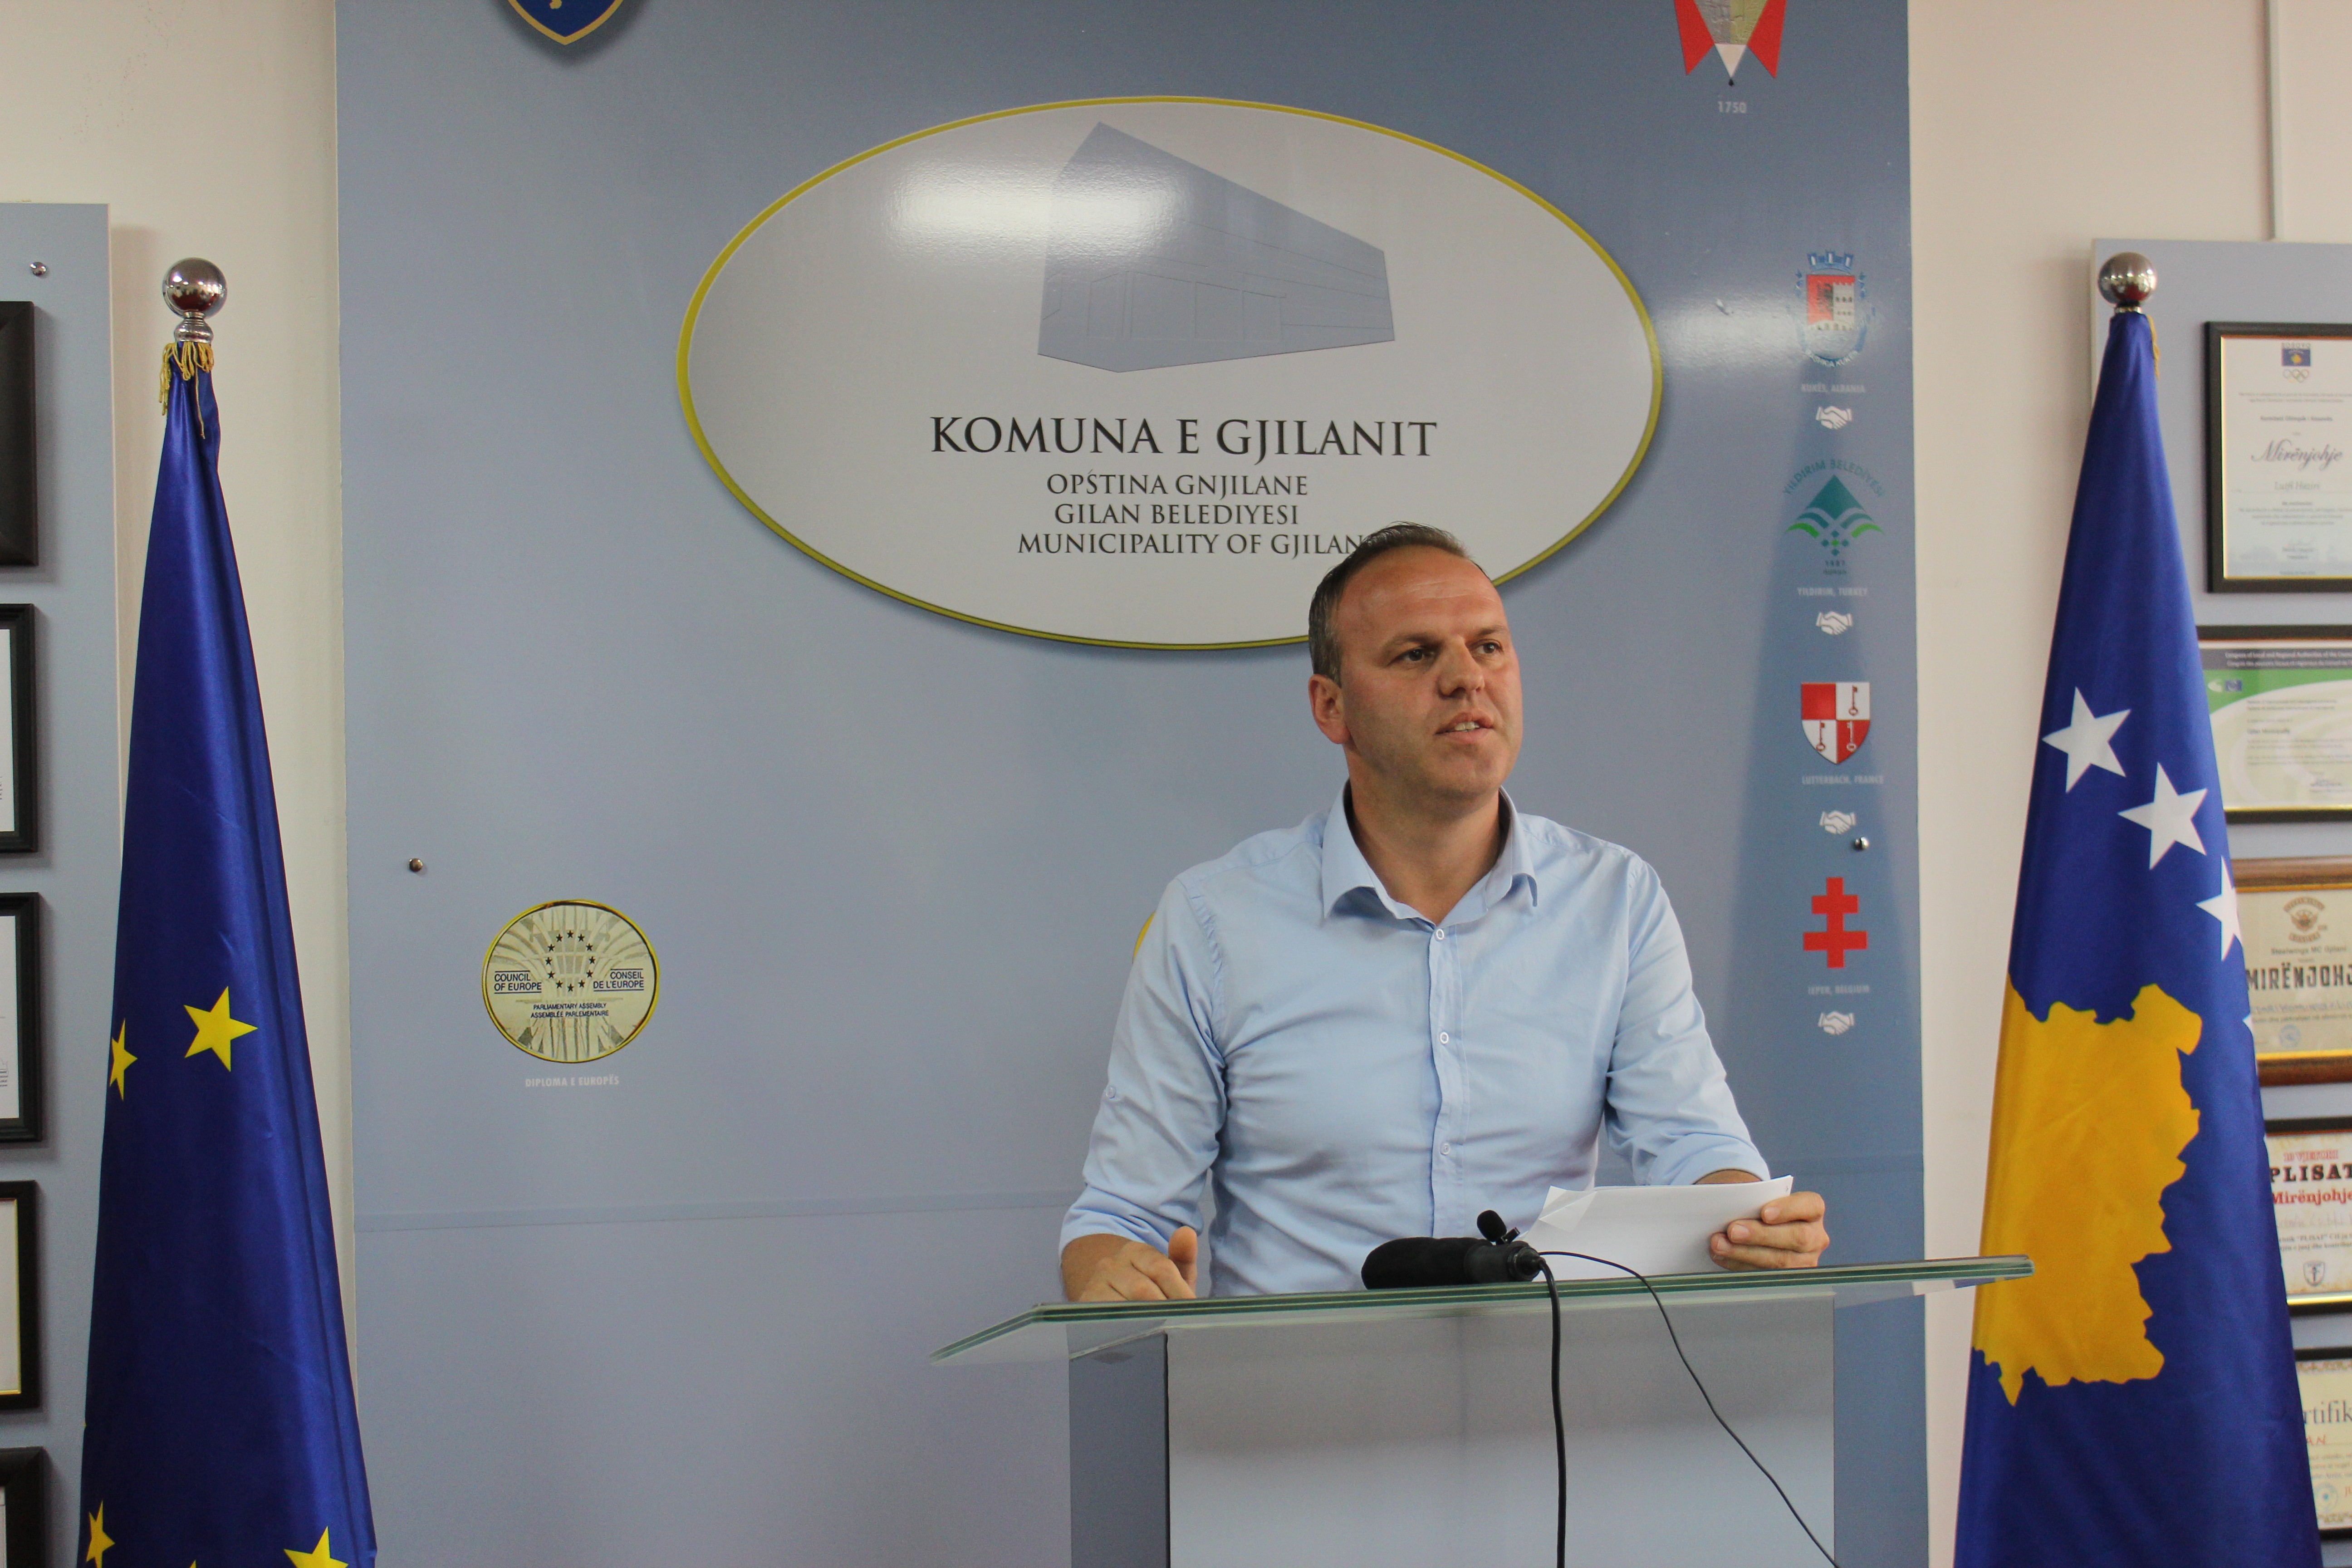 Administrata e Gjilanit stabile dhe efikase sa i përket shërbimeve për qytetarë